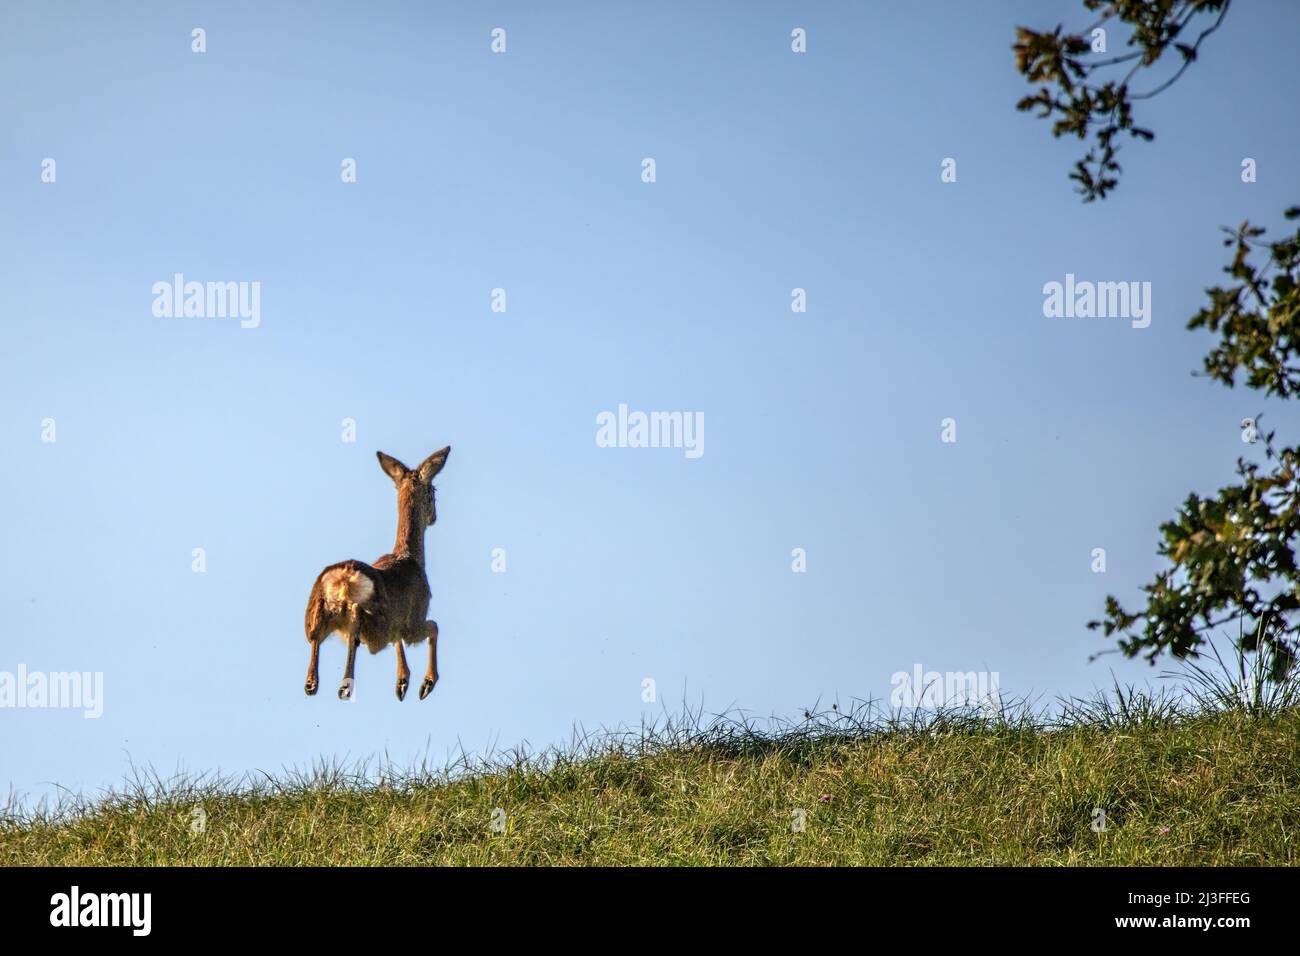 Deer, Nature, Animal, Wildlife, Switzerland, Mammal Stock Photo